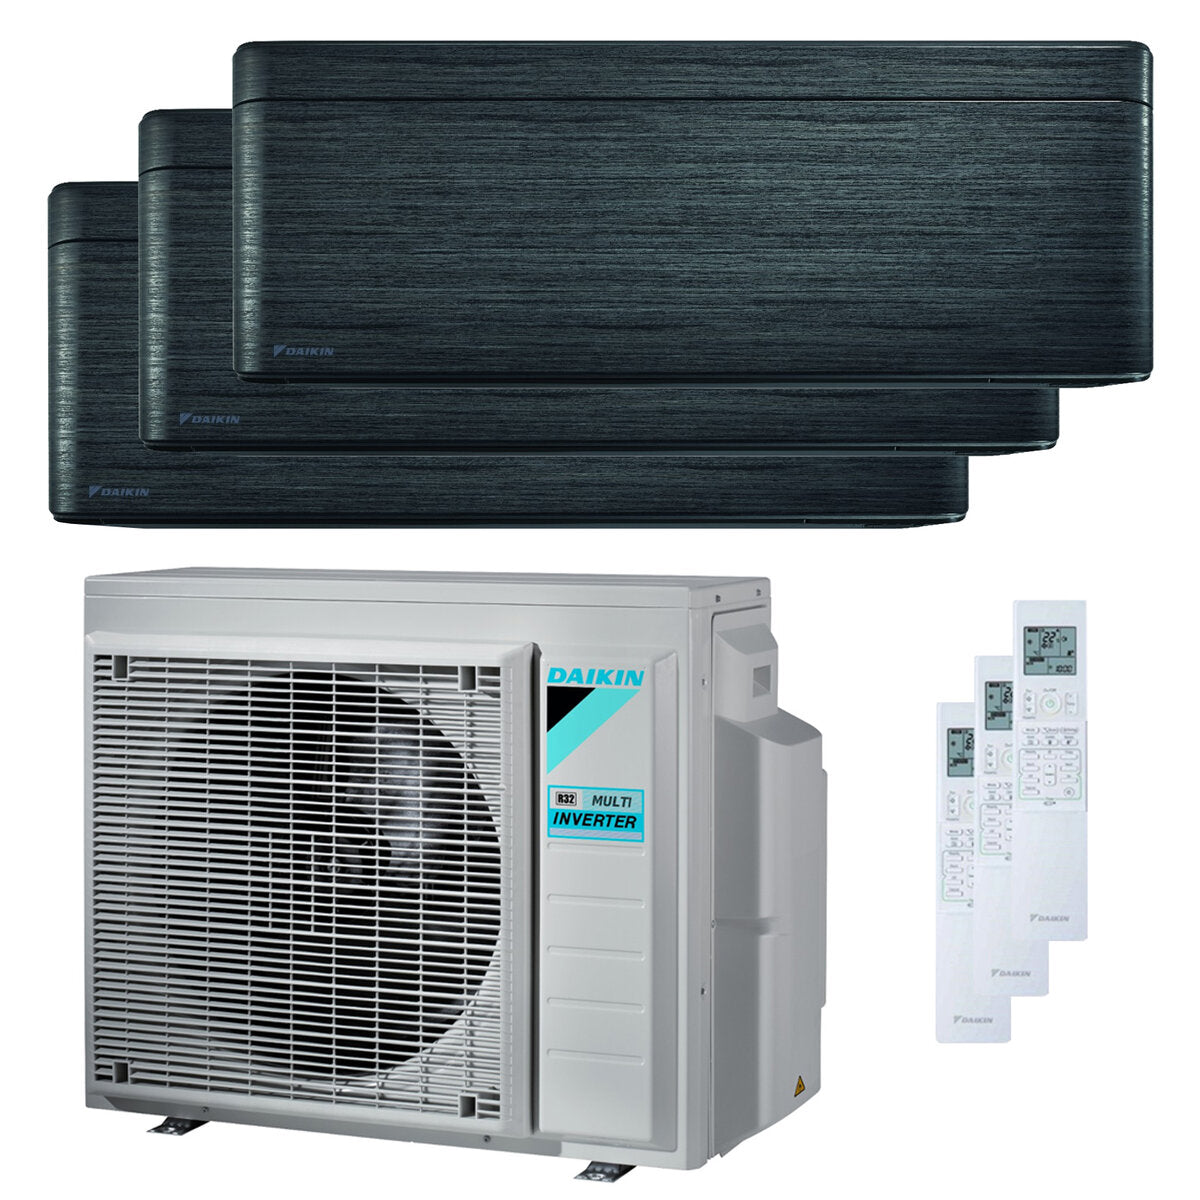 Daikin Stylish Trial Split Klimaanlage 5000 + 5000 + 7000 BTU Inverter A +++ WLAN Außengerät 4,0 kW